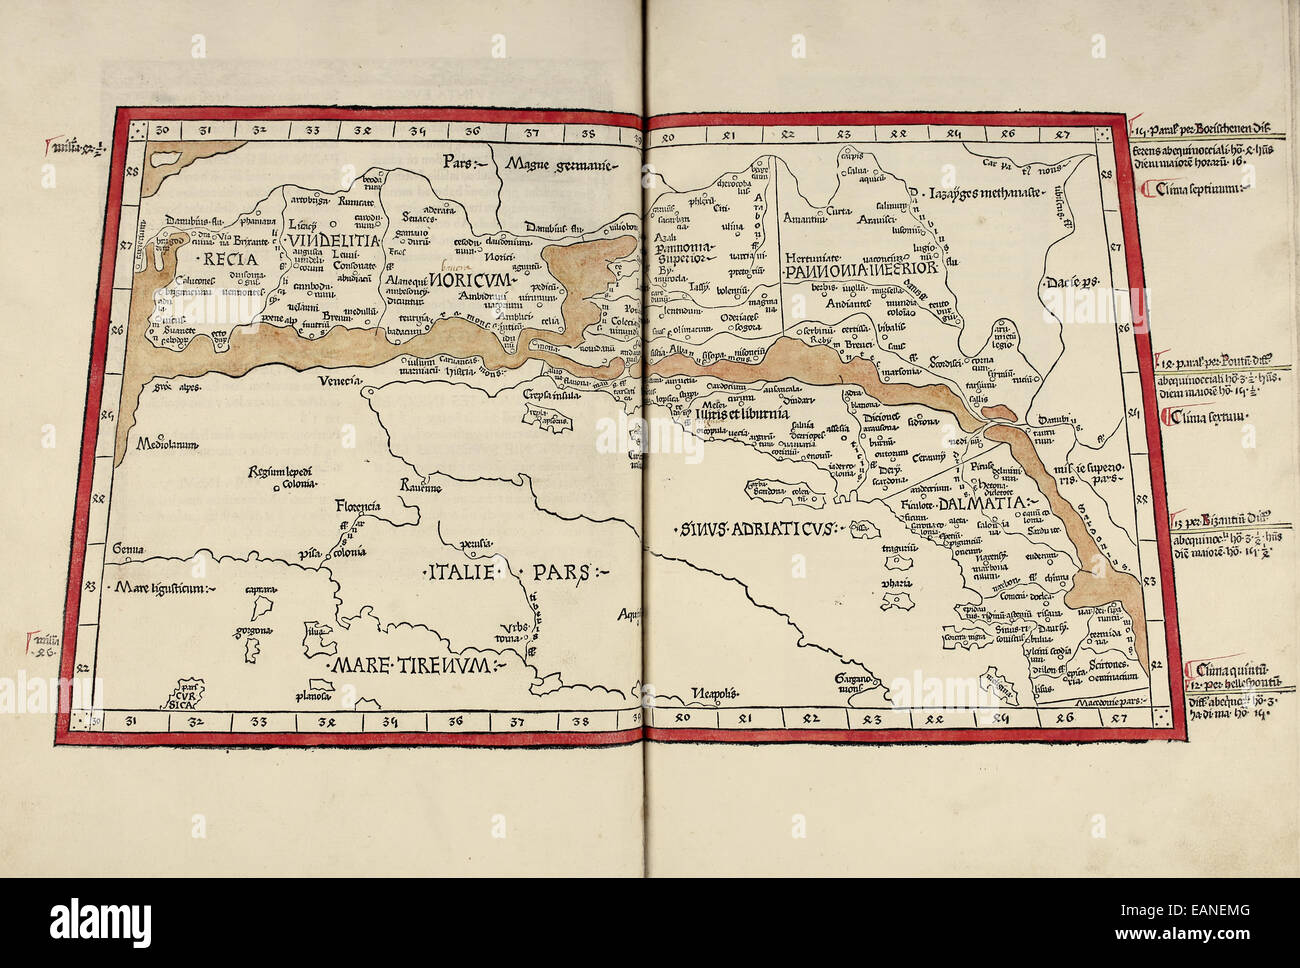 Karte von Kroatien aus "Cosmographia" von Claudius Ptolemäus (Ptolemaeus) (90-168AD). Siehe Beschreibung für mehr Informationen. Stockfoto